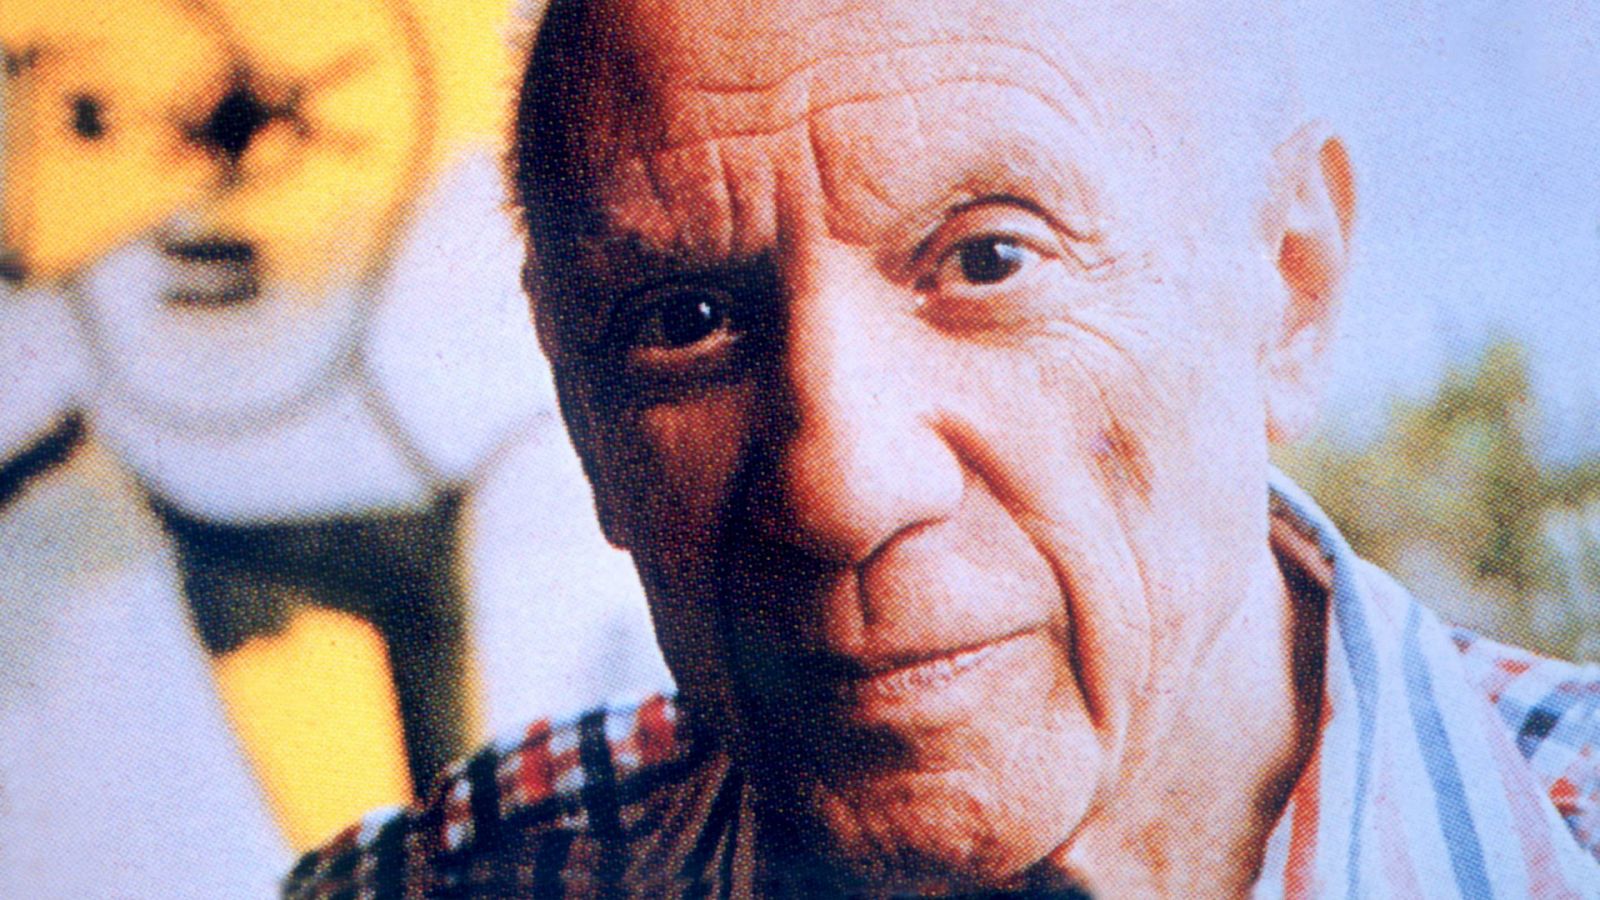 Retrato de Pablo Picasso